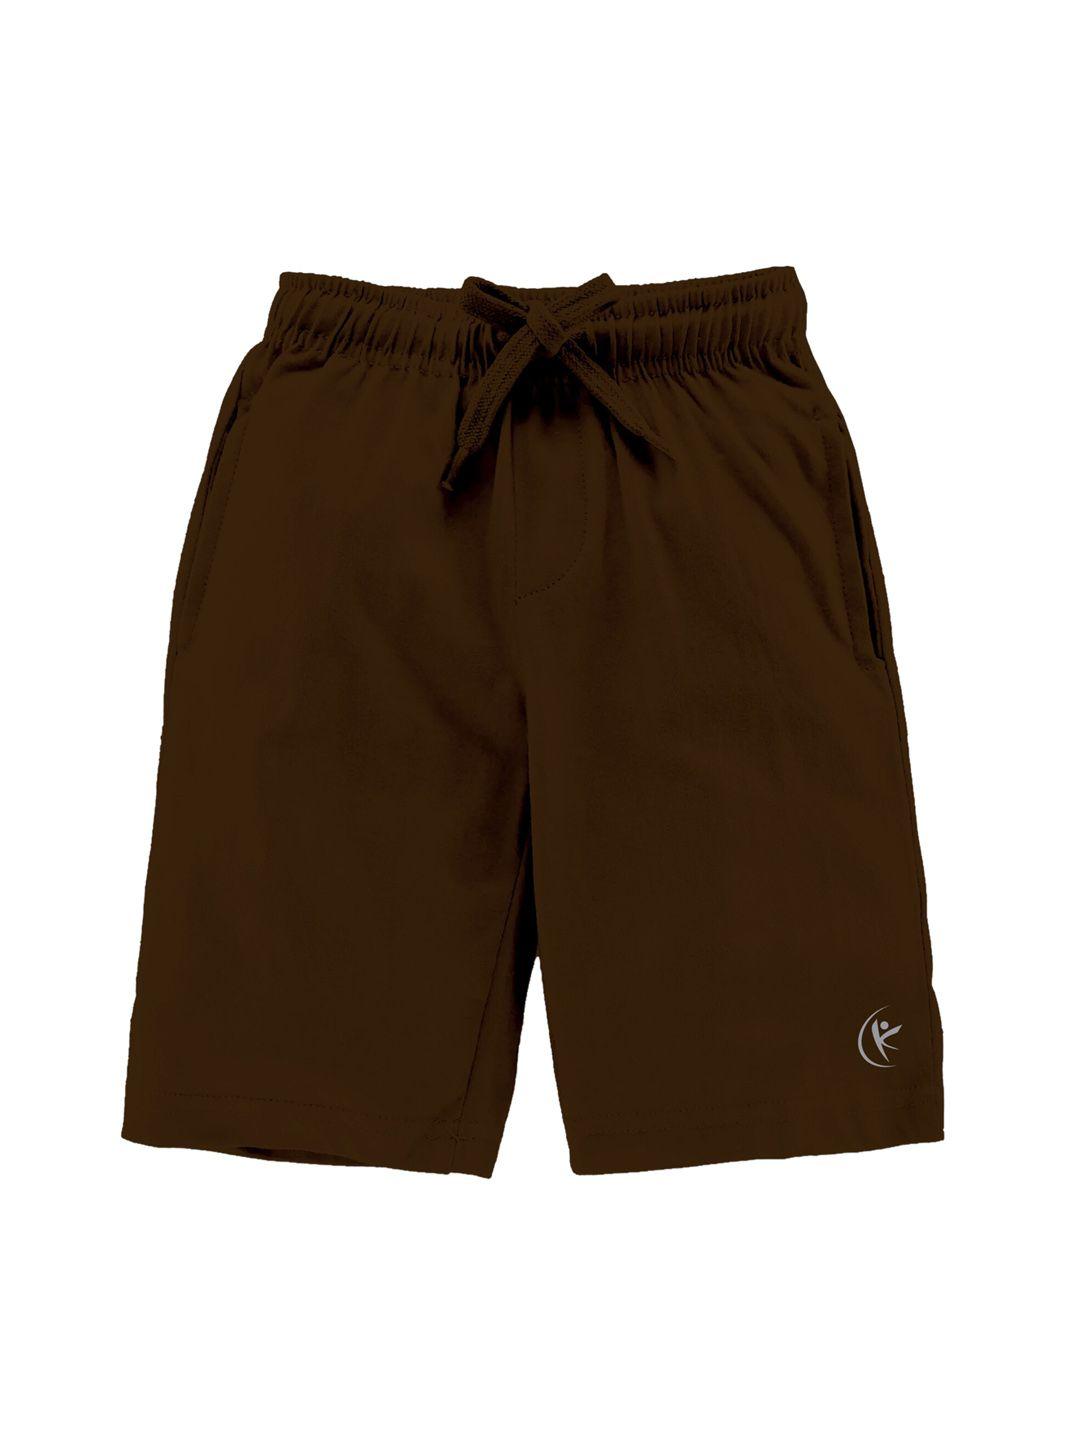 kiddopanti boys brown cotton shorts